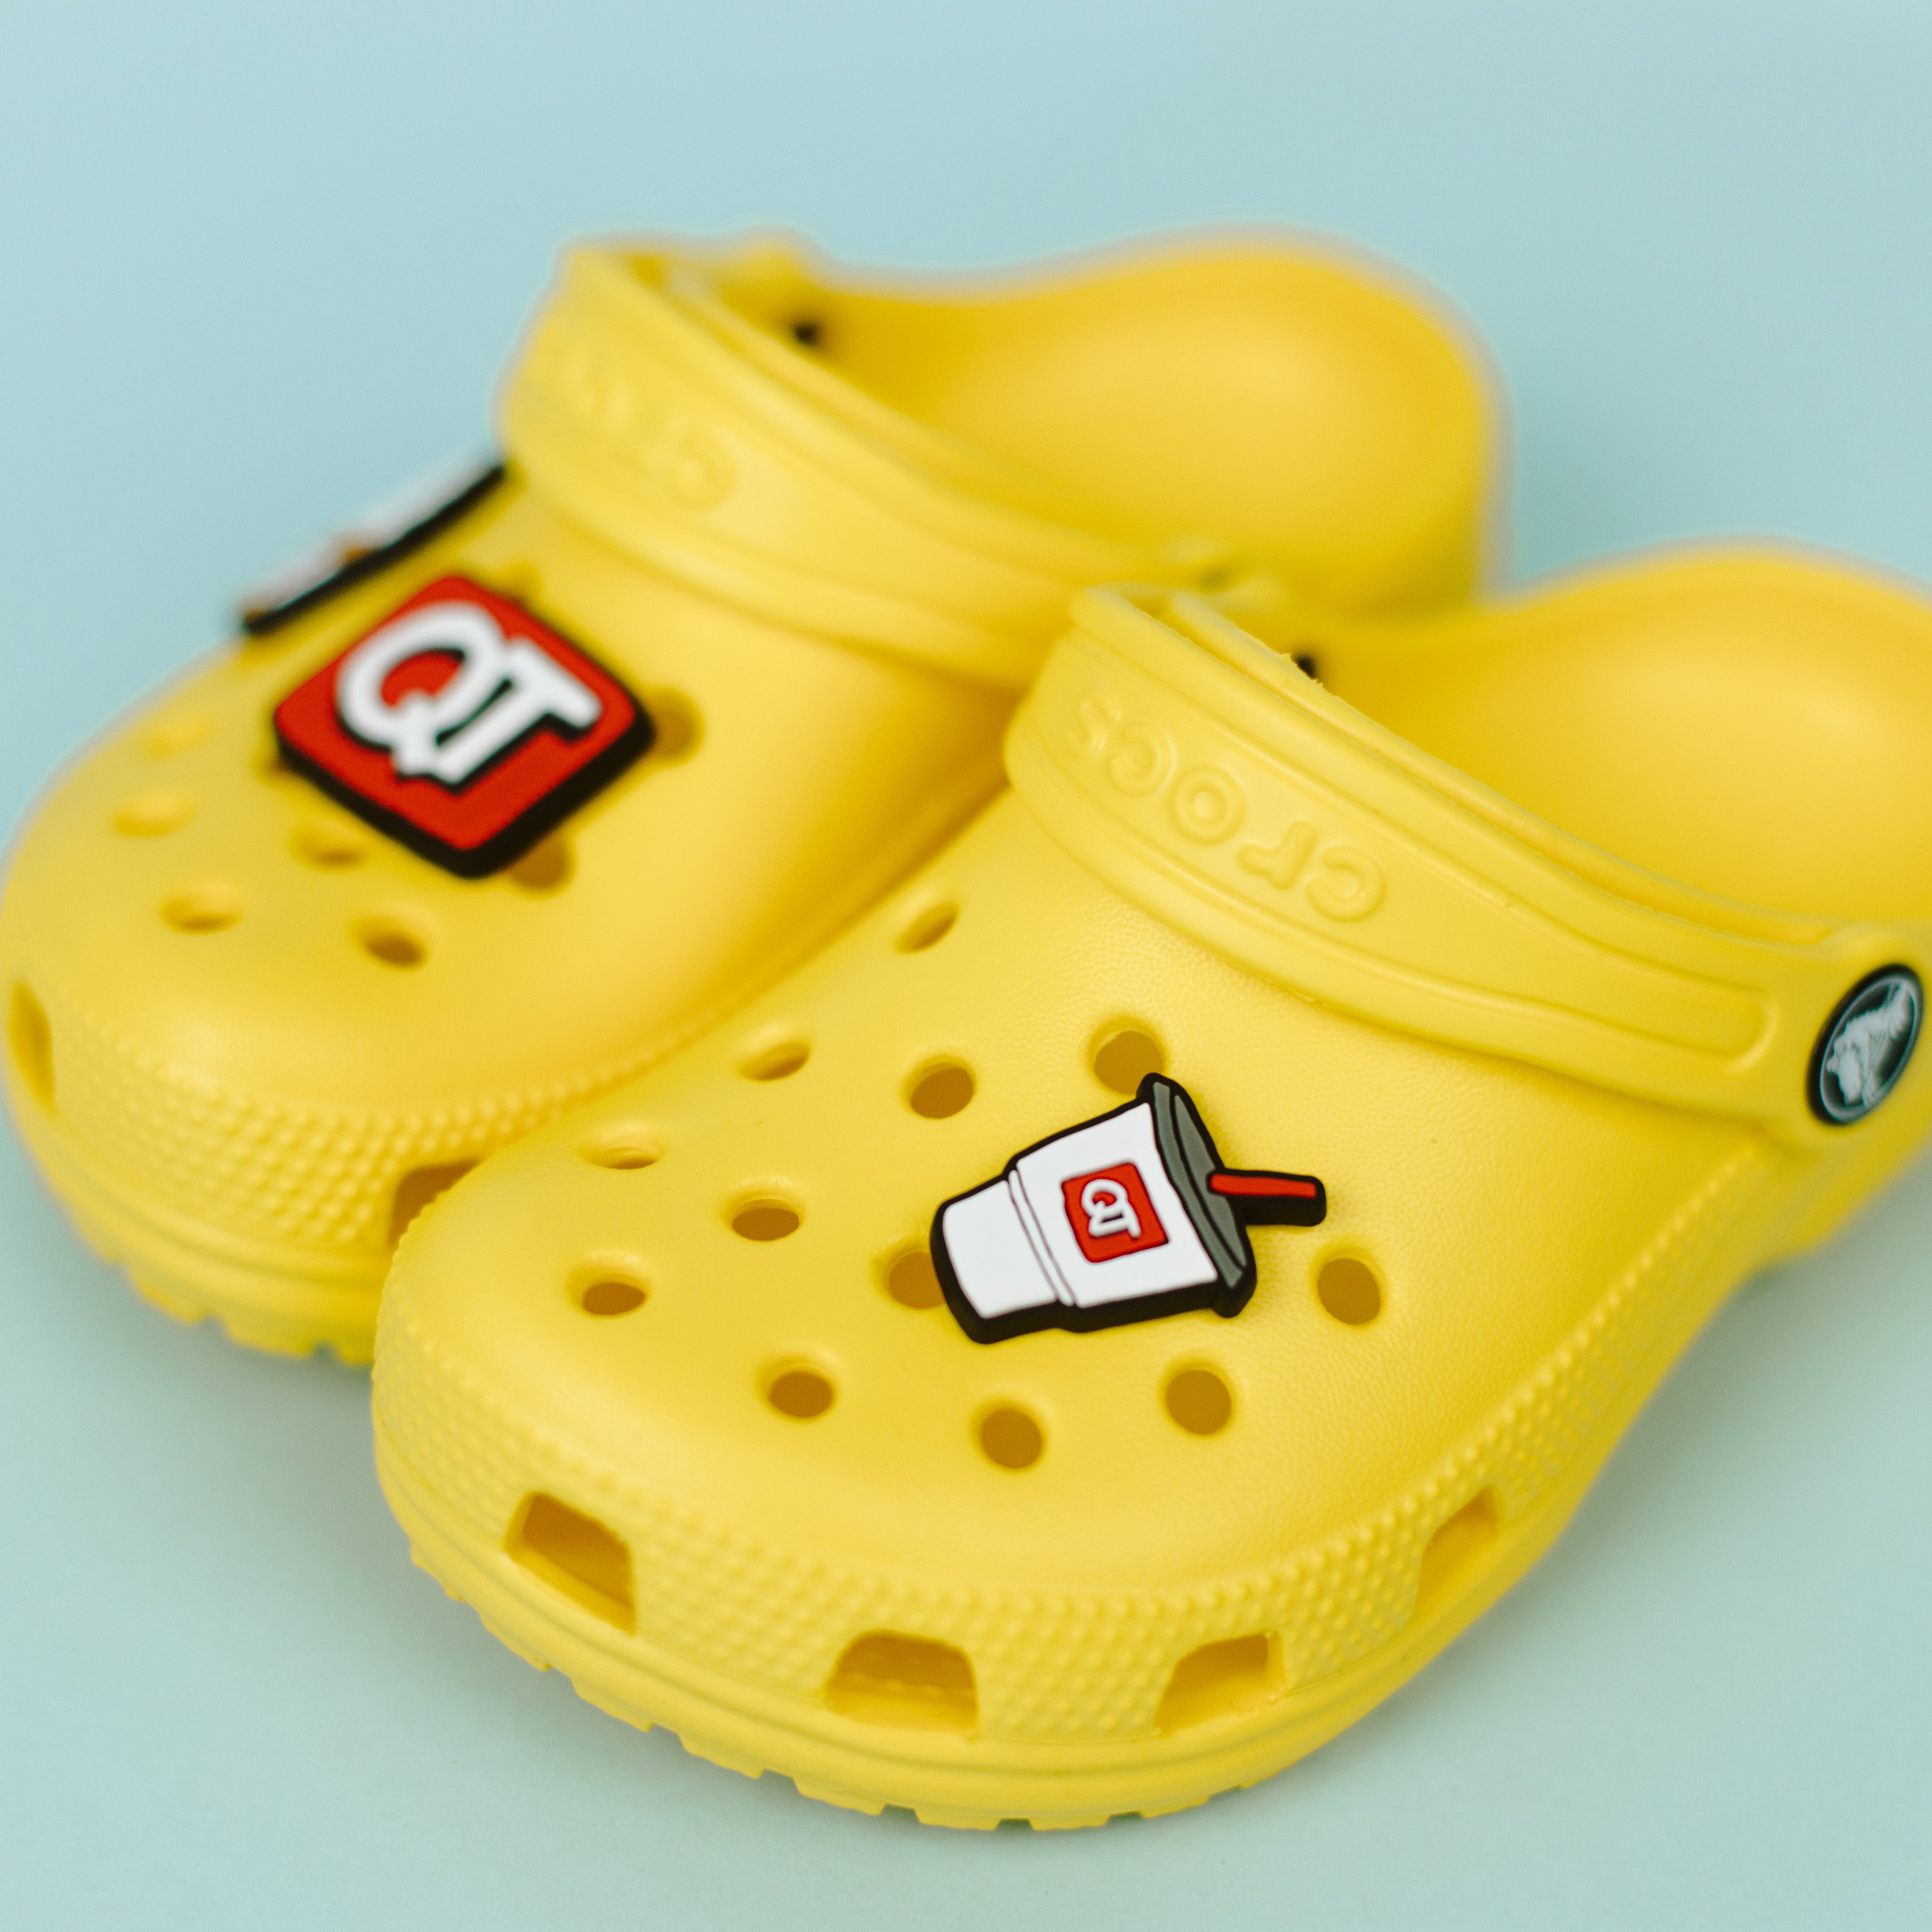 Croc Shoe Charms for Sale  Shoe charms, Crocs shoes, Shopping sale